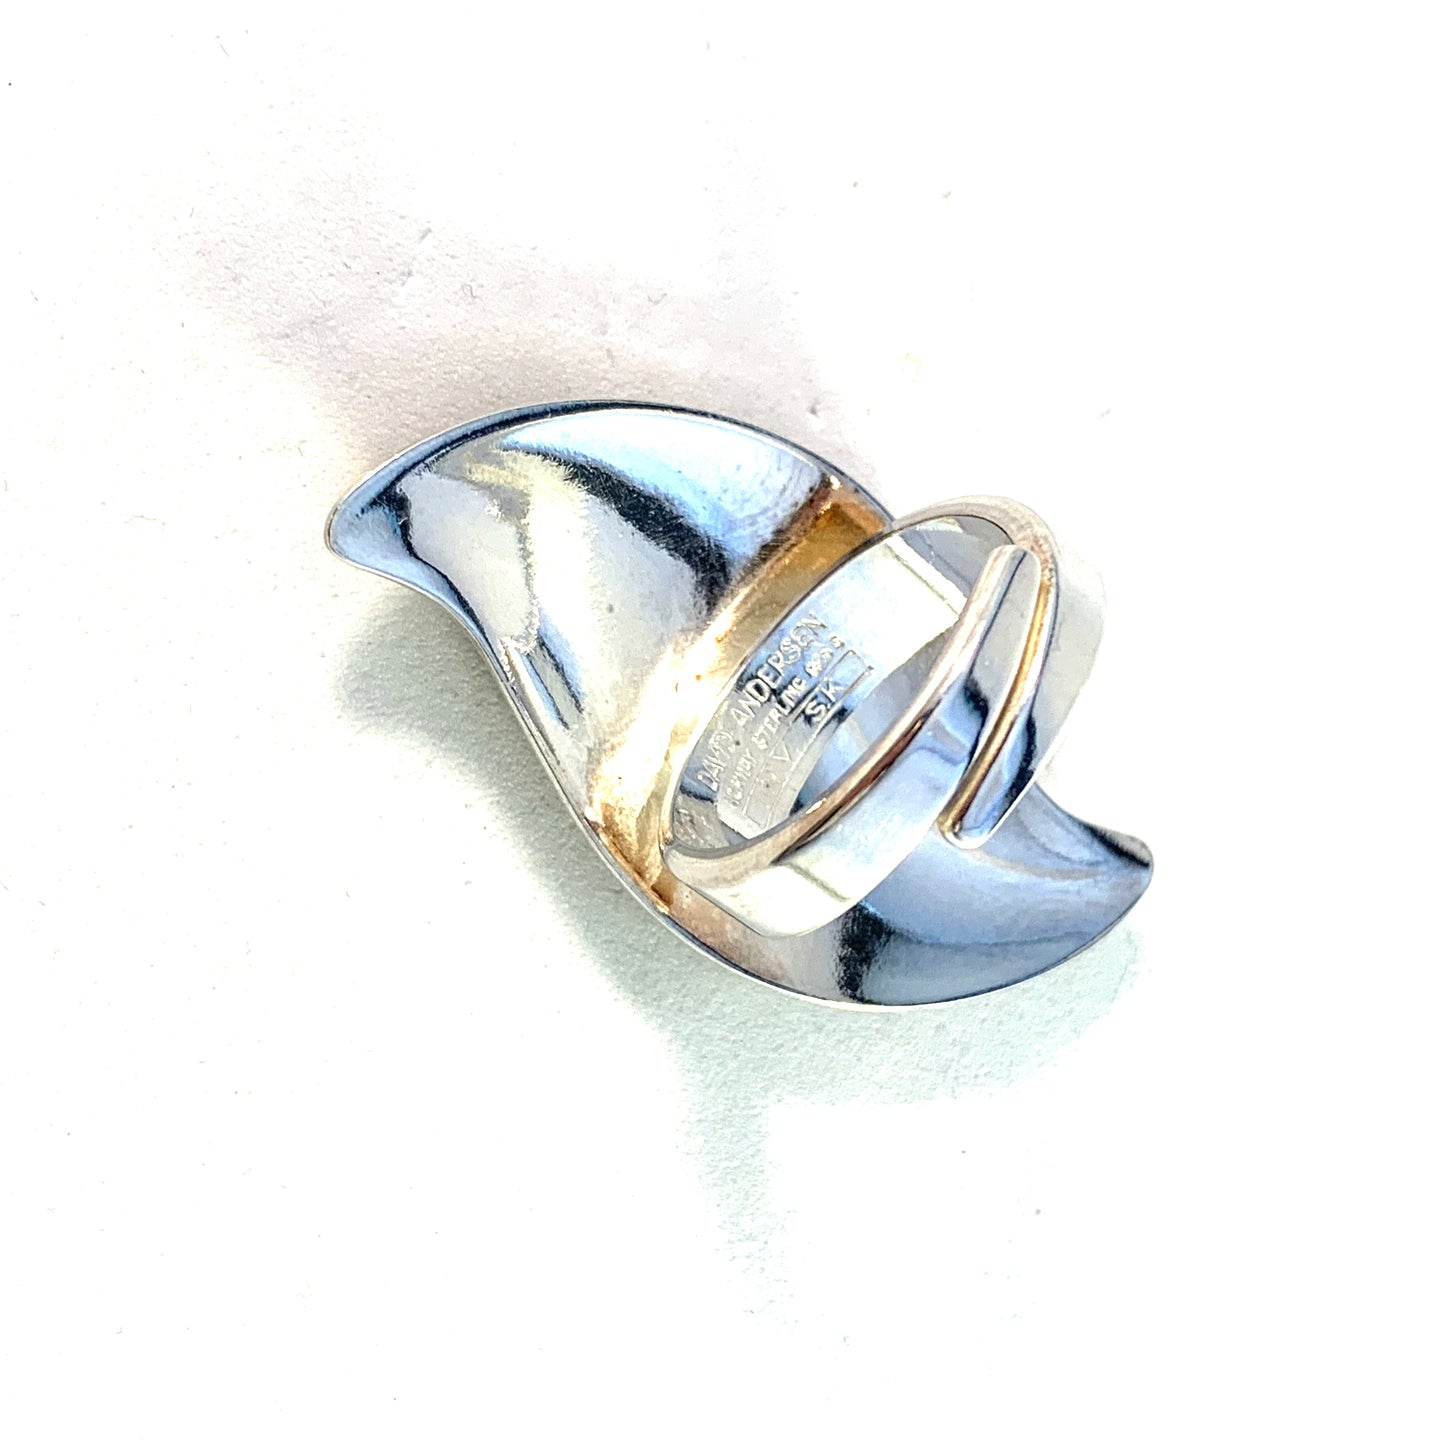 Synnøve Korssjøen, for David Andersen, Norway. Large Vintage Sterling Silver Blue Enamel Adjustable Size Ring.